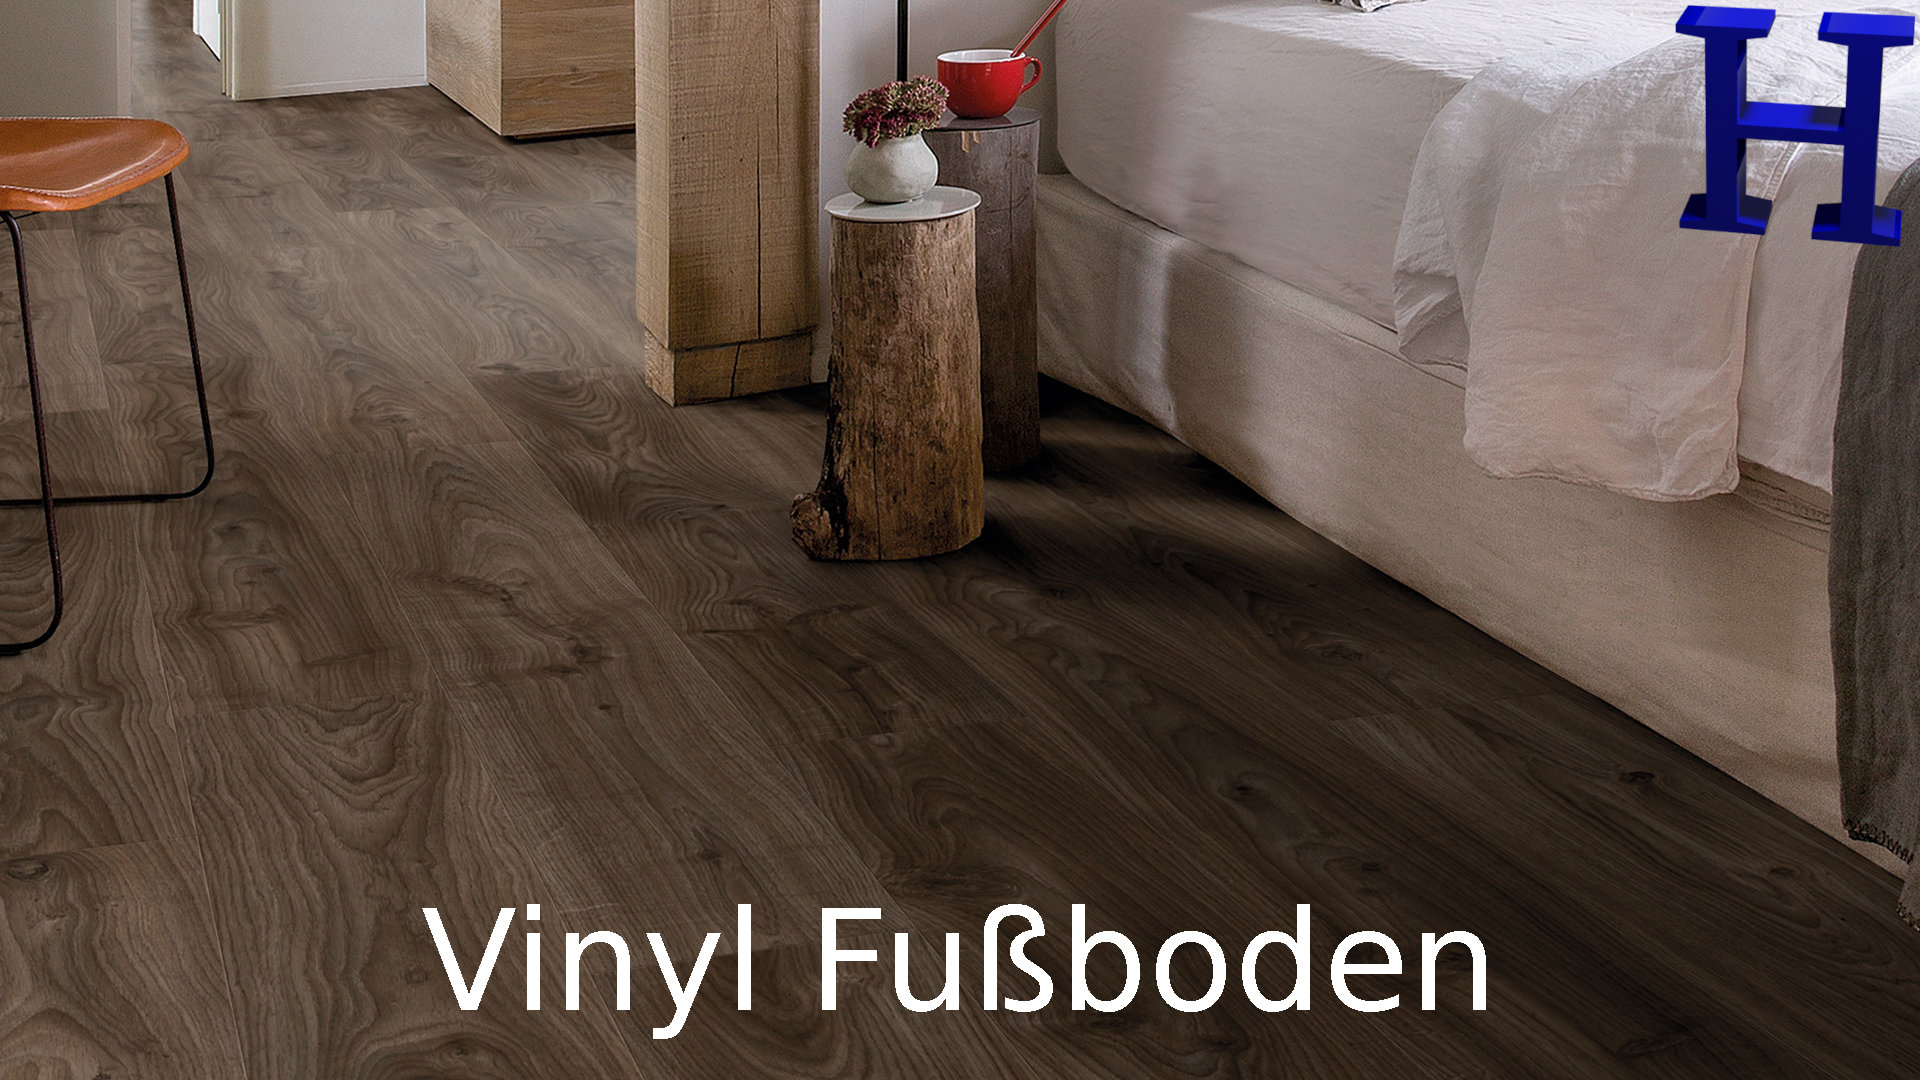 Vinyl Fußboden zur Klick Verlegung & direkten Verklebung